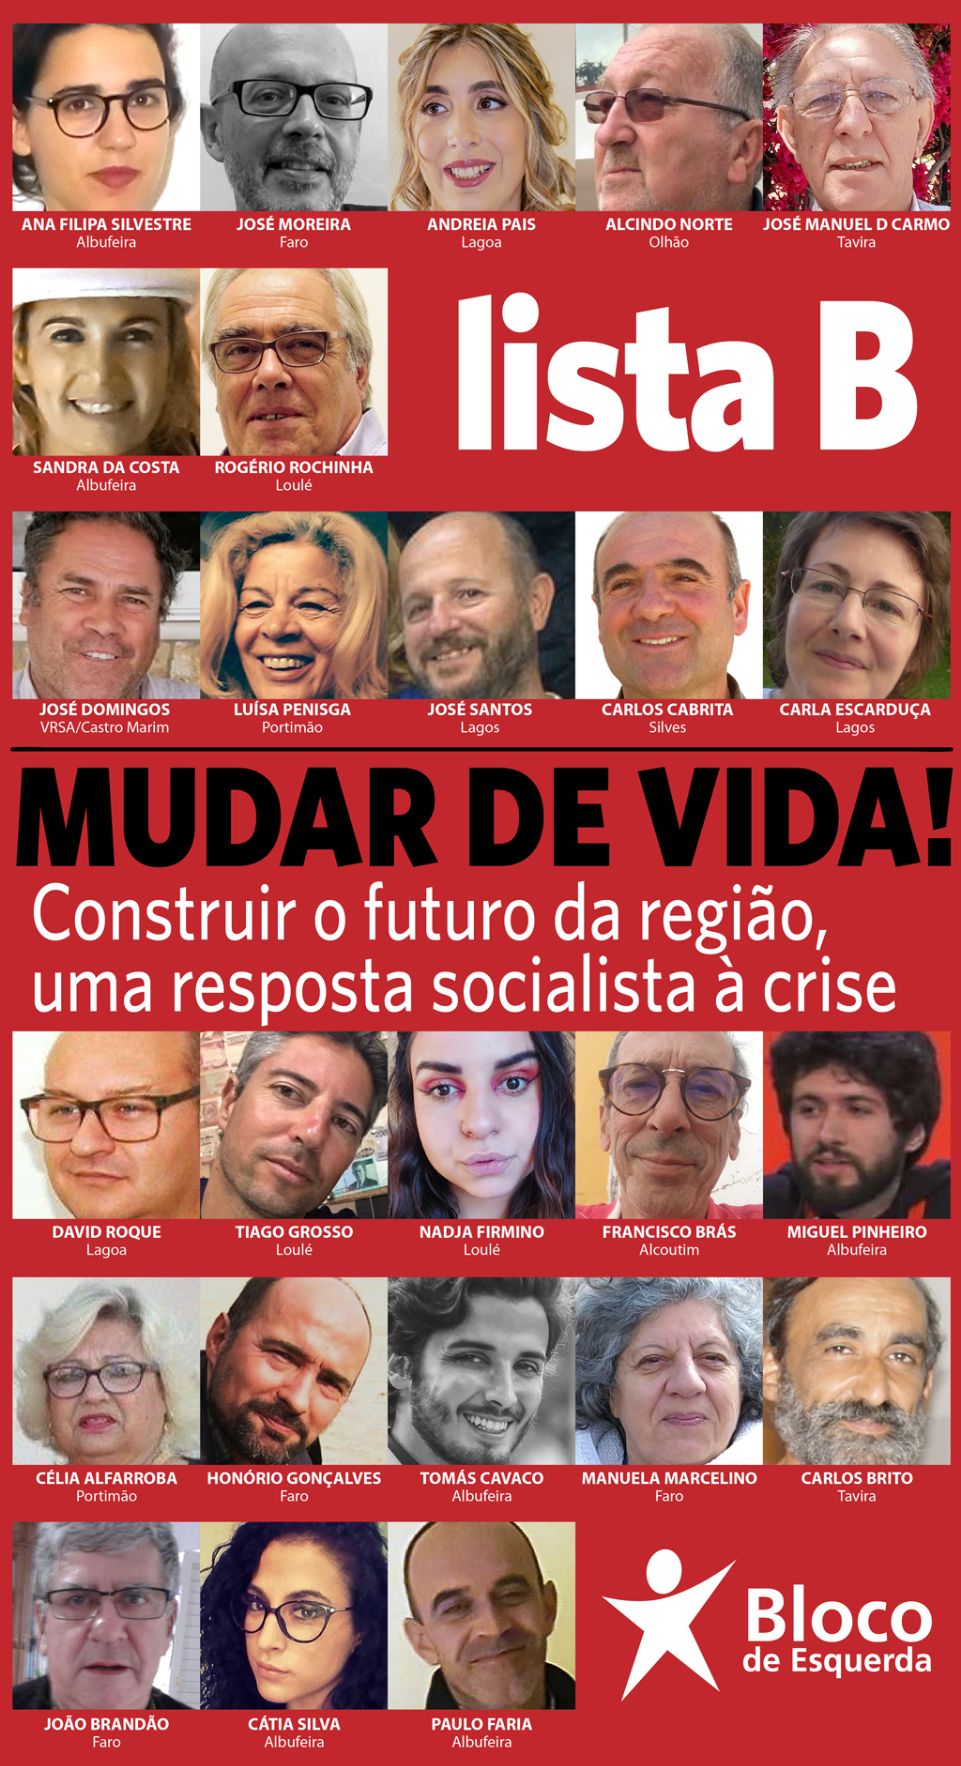 Bloco de Esquerda: movimento "Mudar de Vida!" visa impulsionar o BE no Algarve